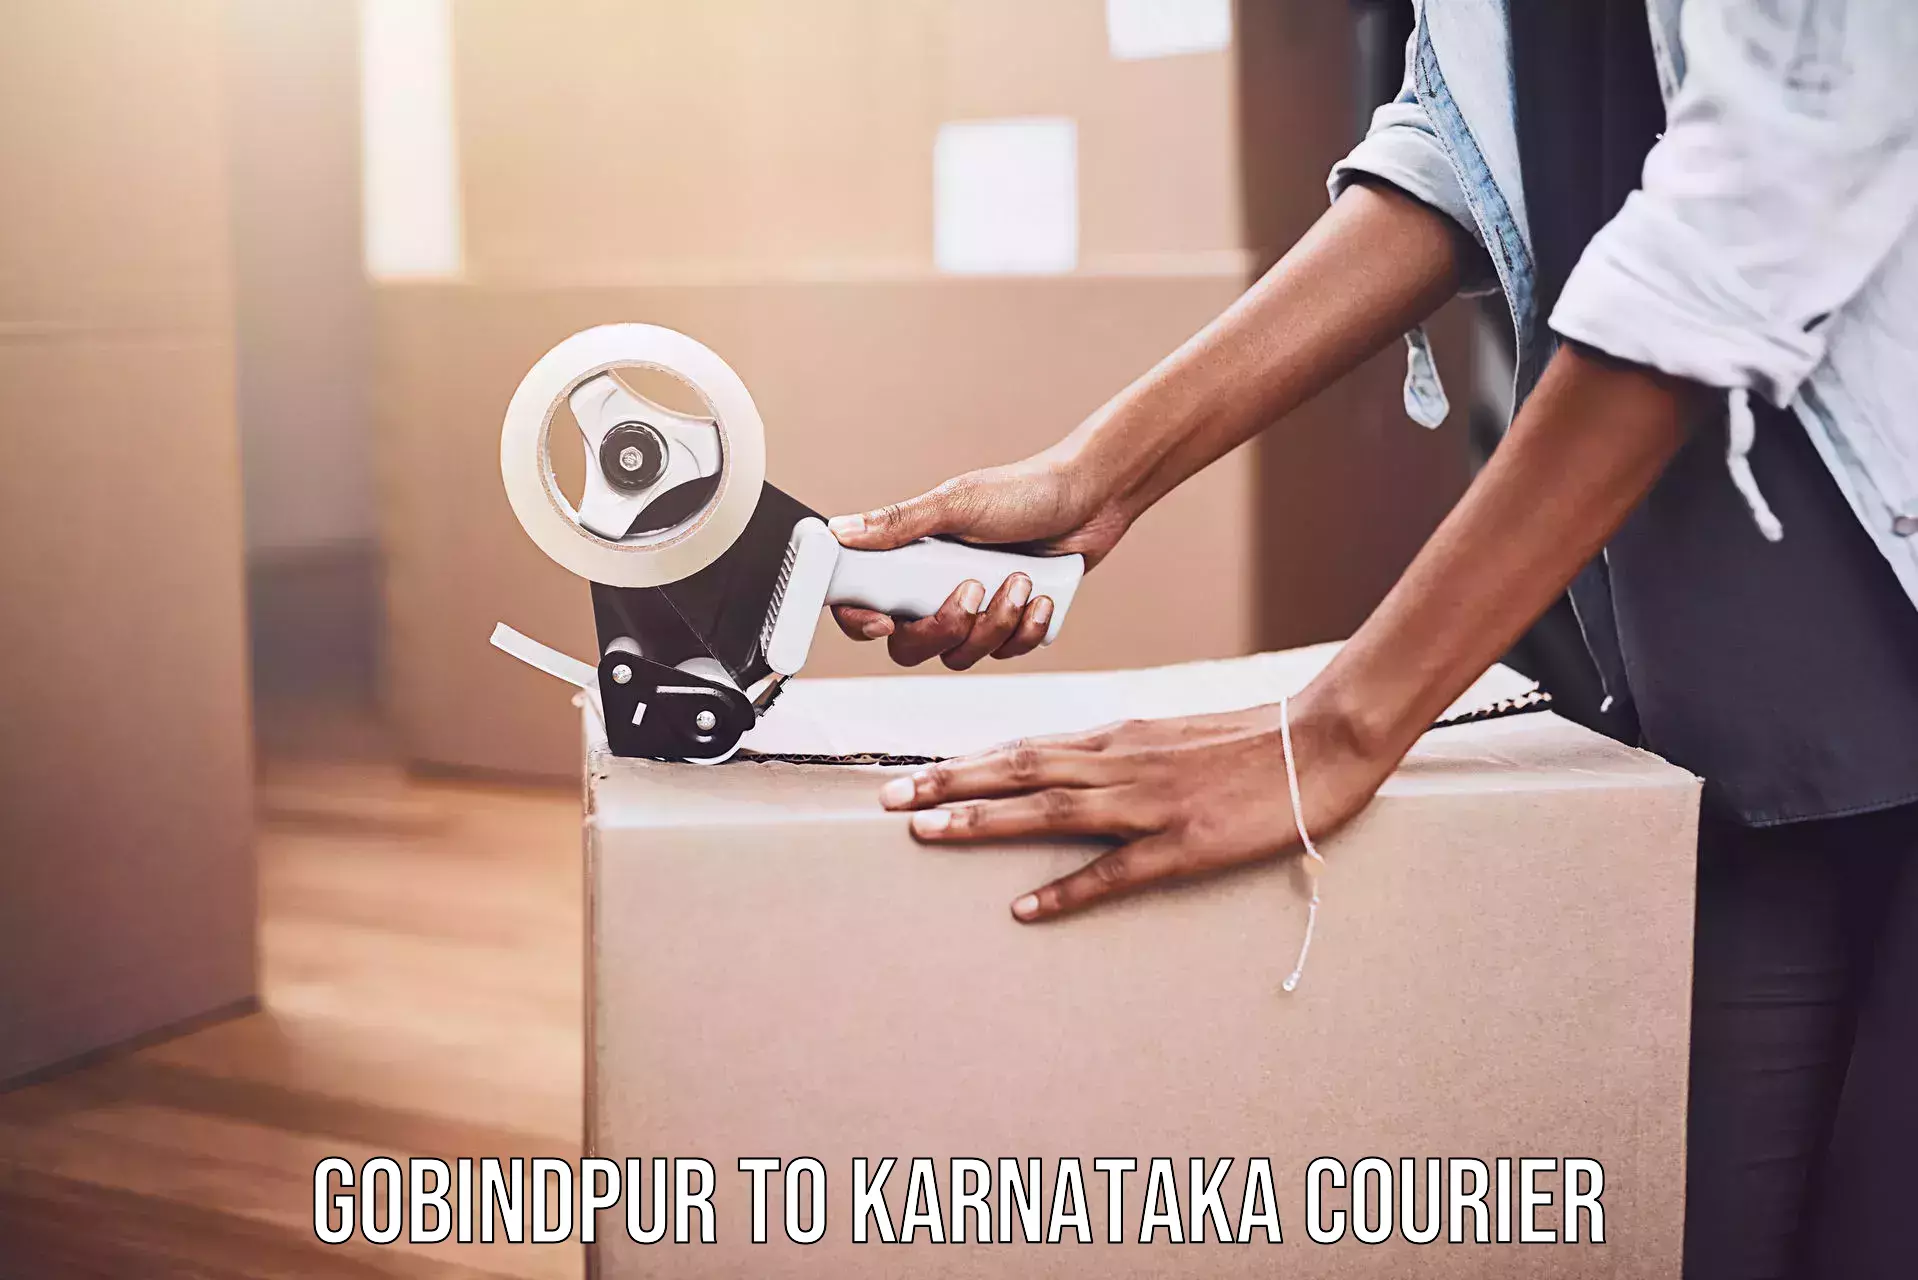 Smart parcel solutions Gobindpur to Kanjarakatte